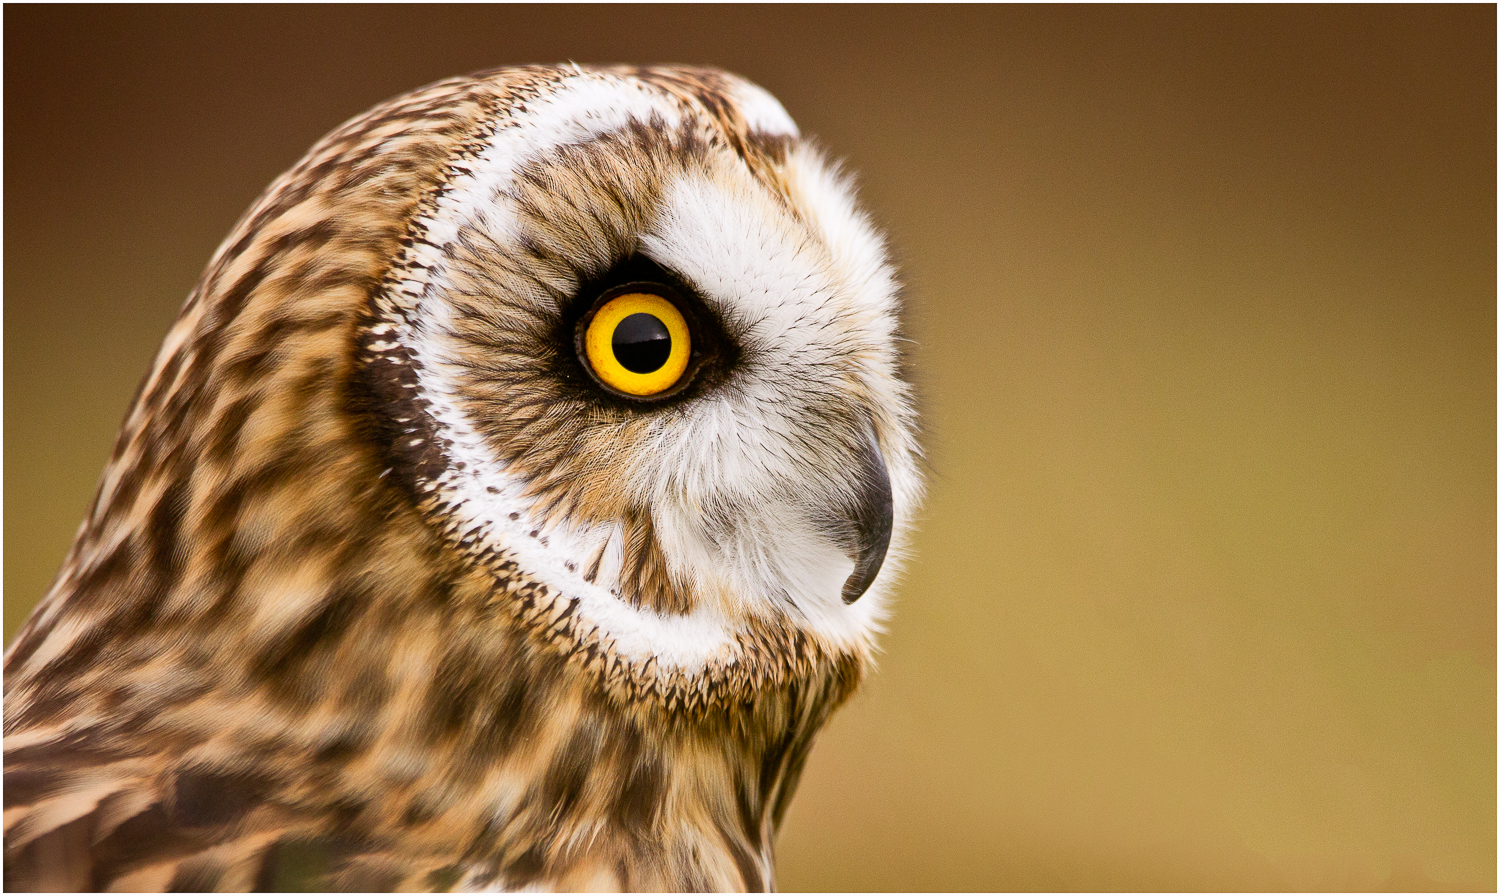 Owl in Profile.jpg